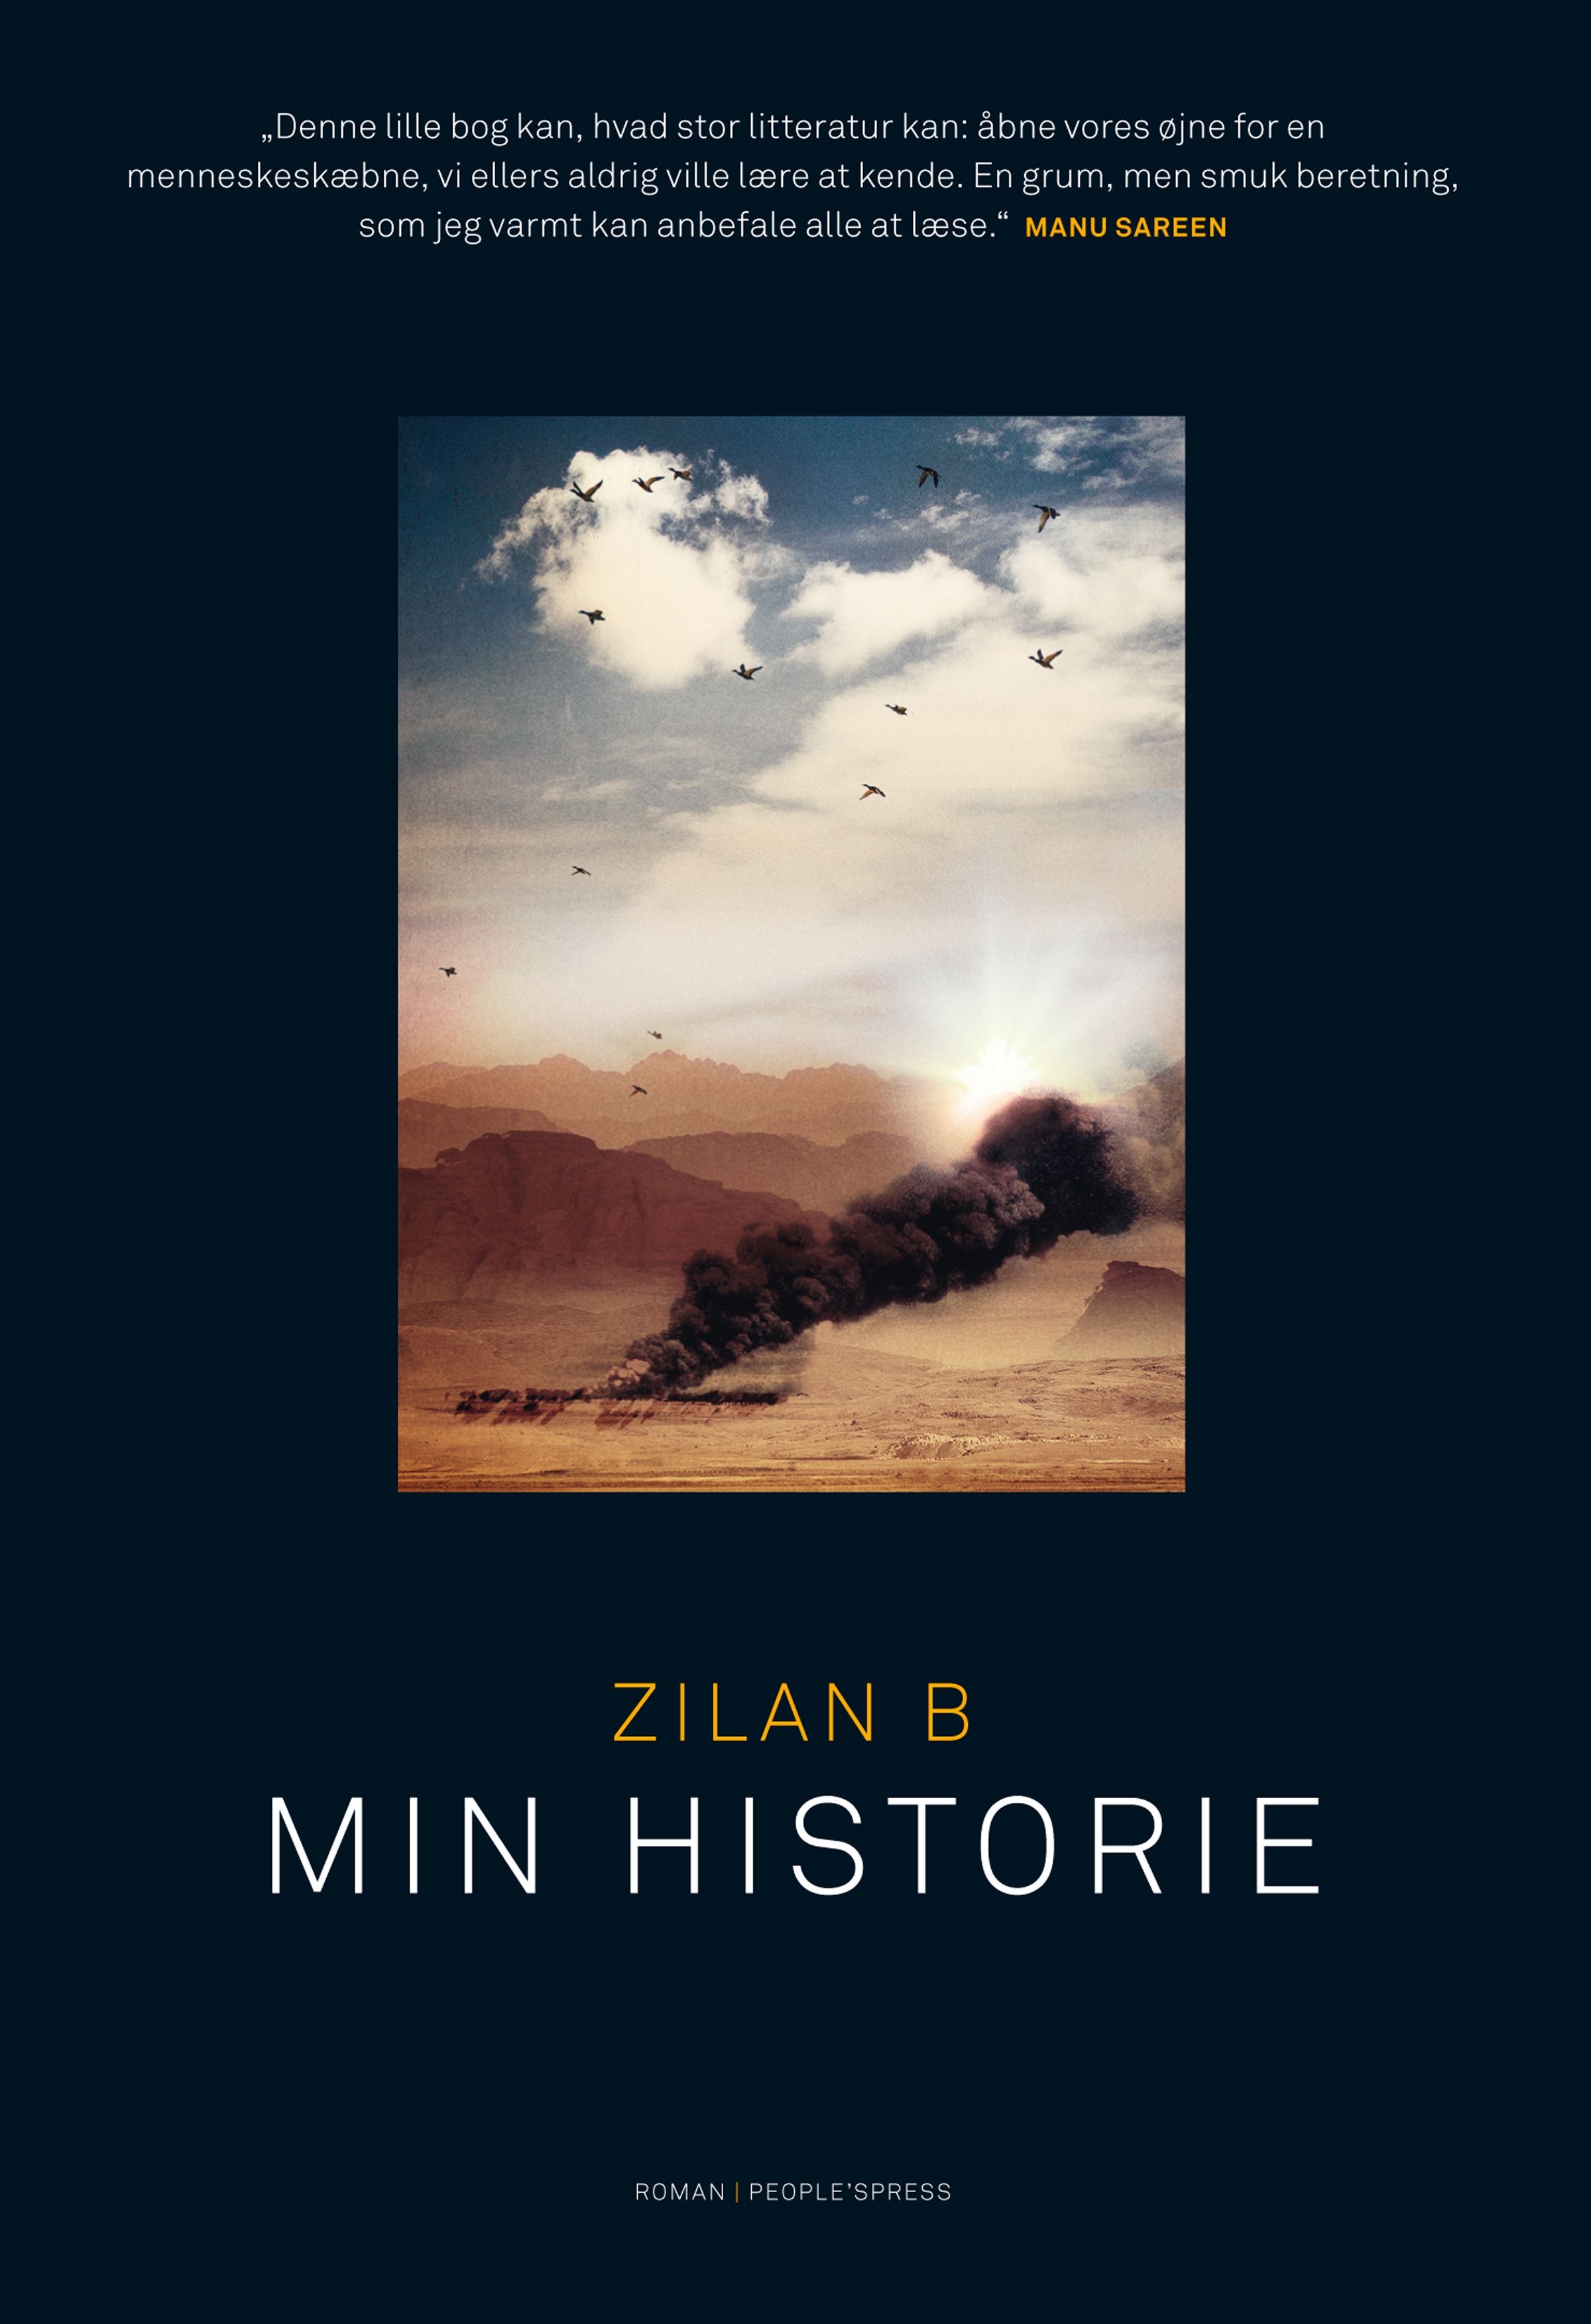 Min historie, e-bog af Zilan B